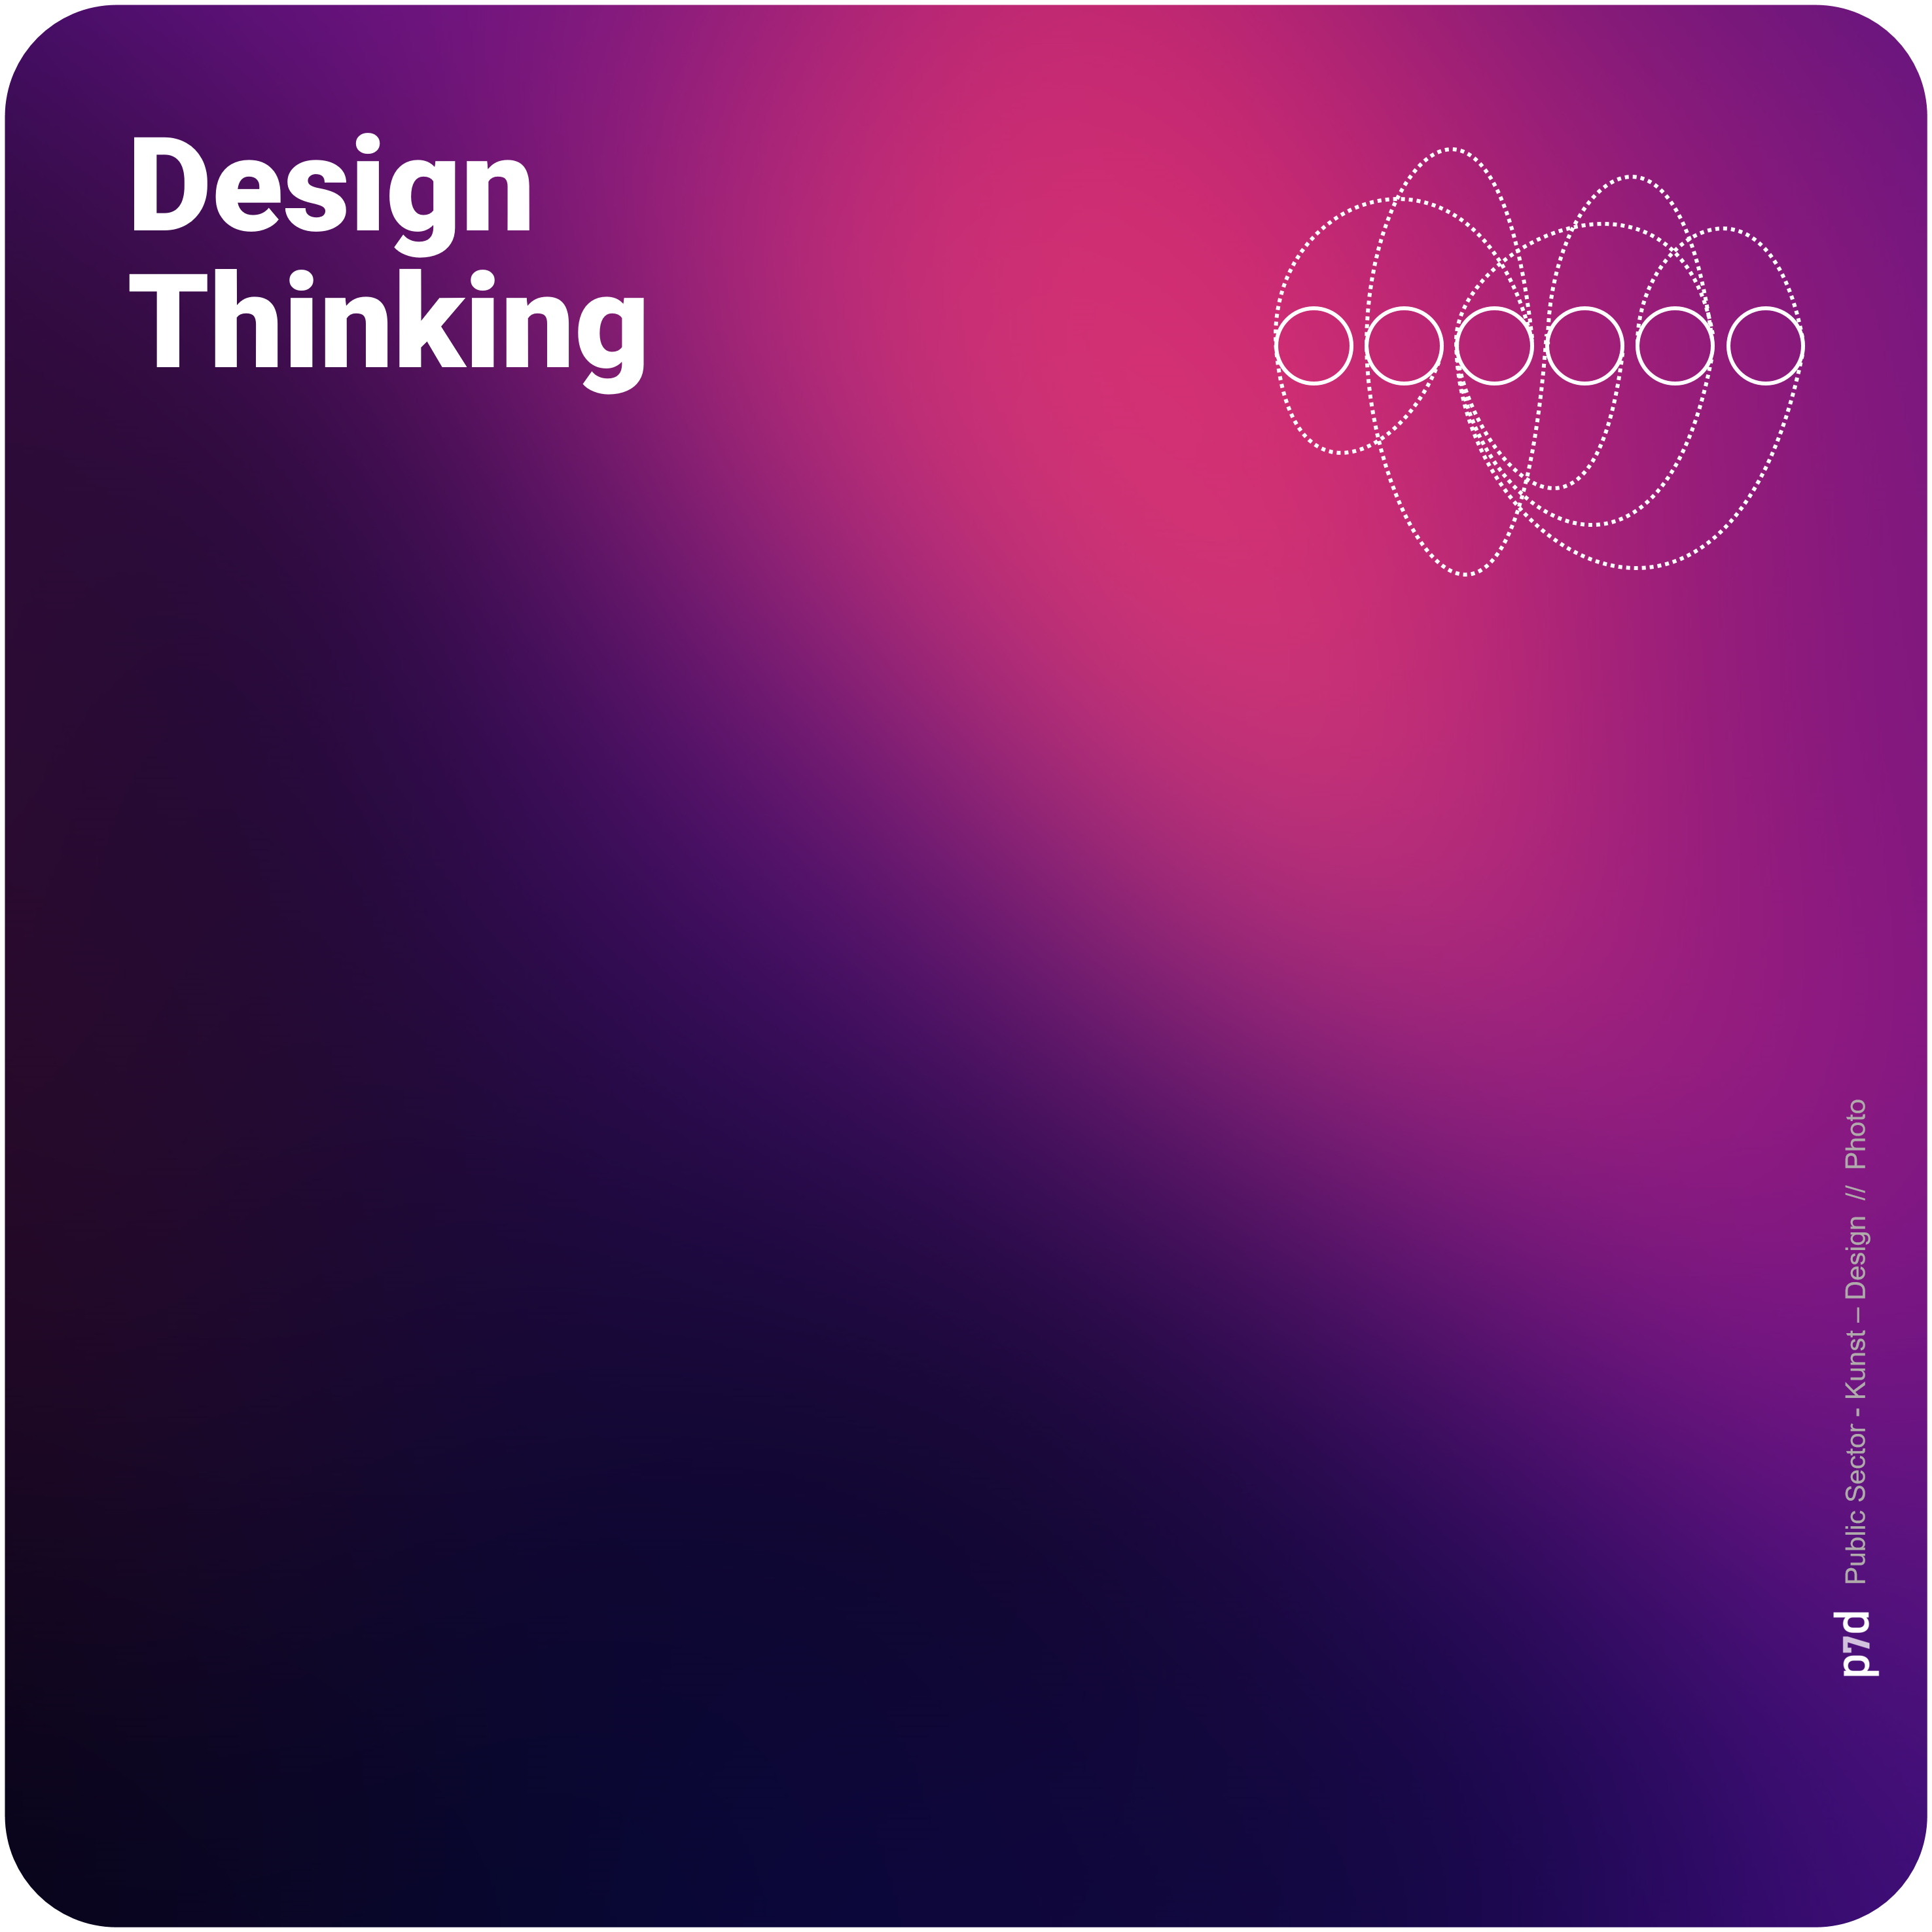 Design Thinking in der öffentlichen Verwaltung: Ein Paradigmenwechsel